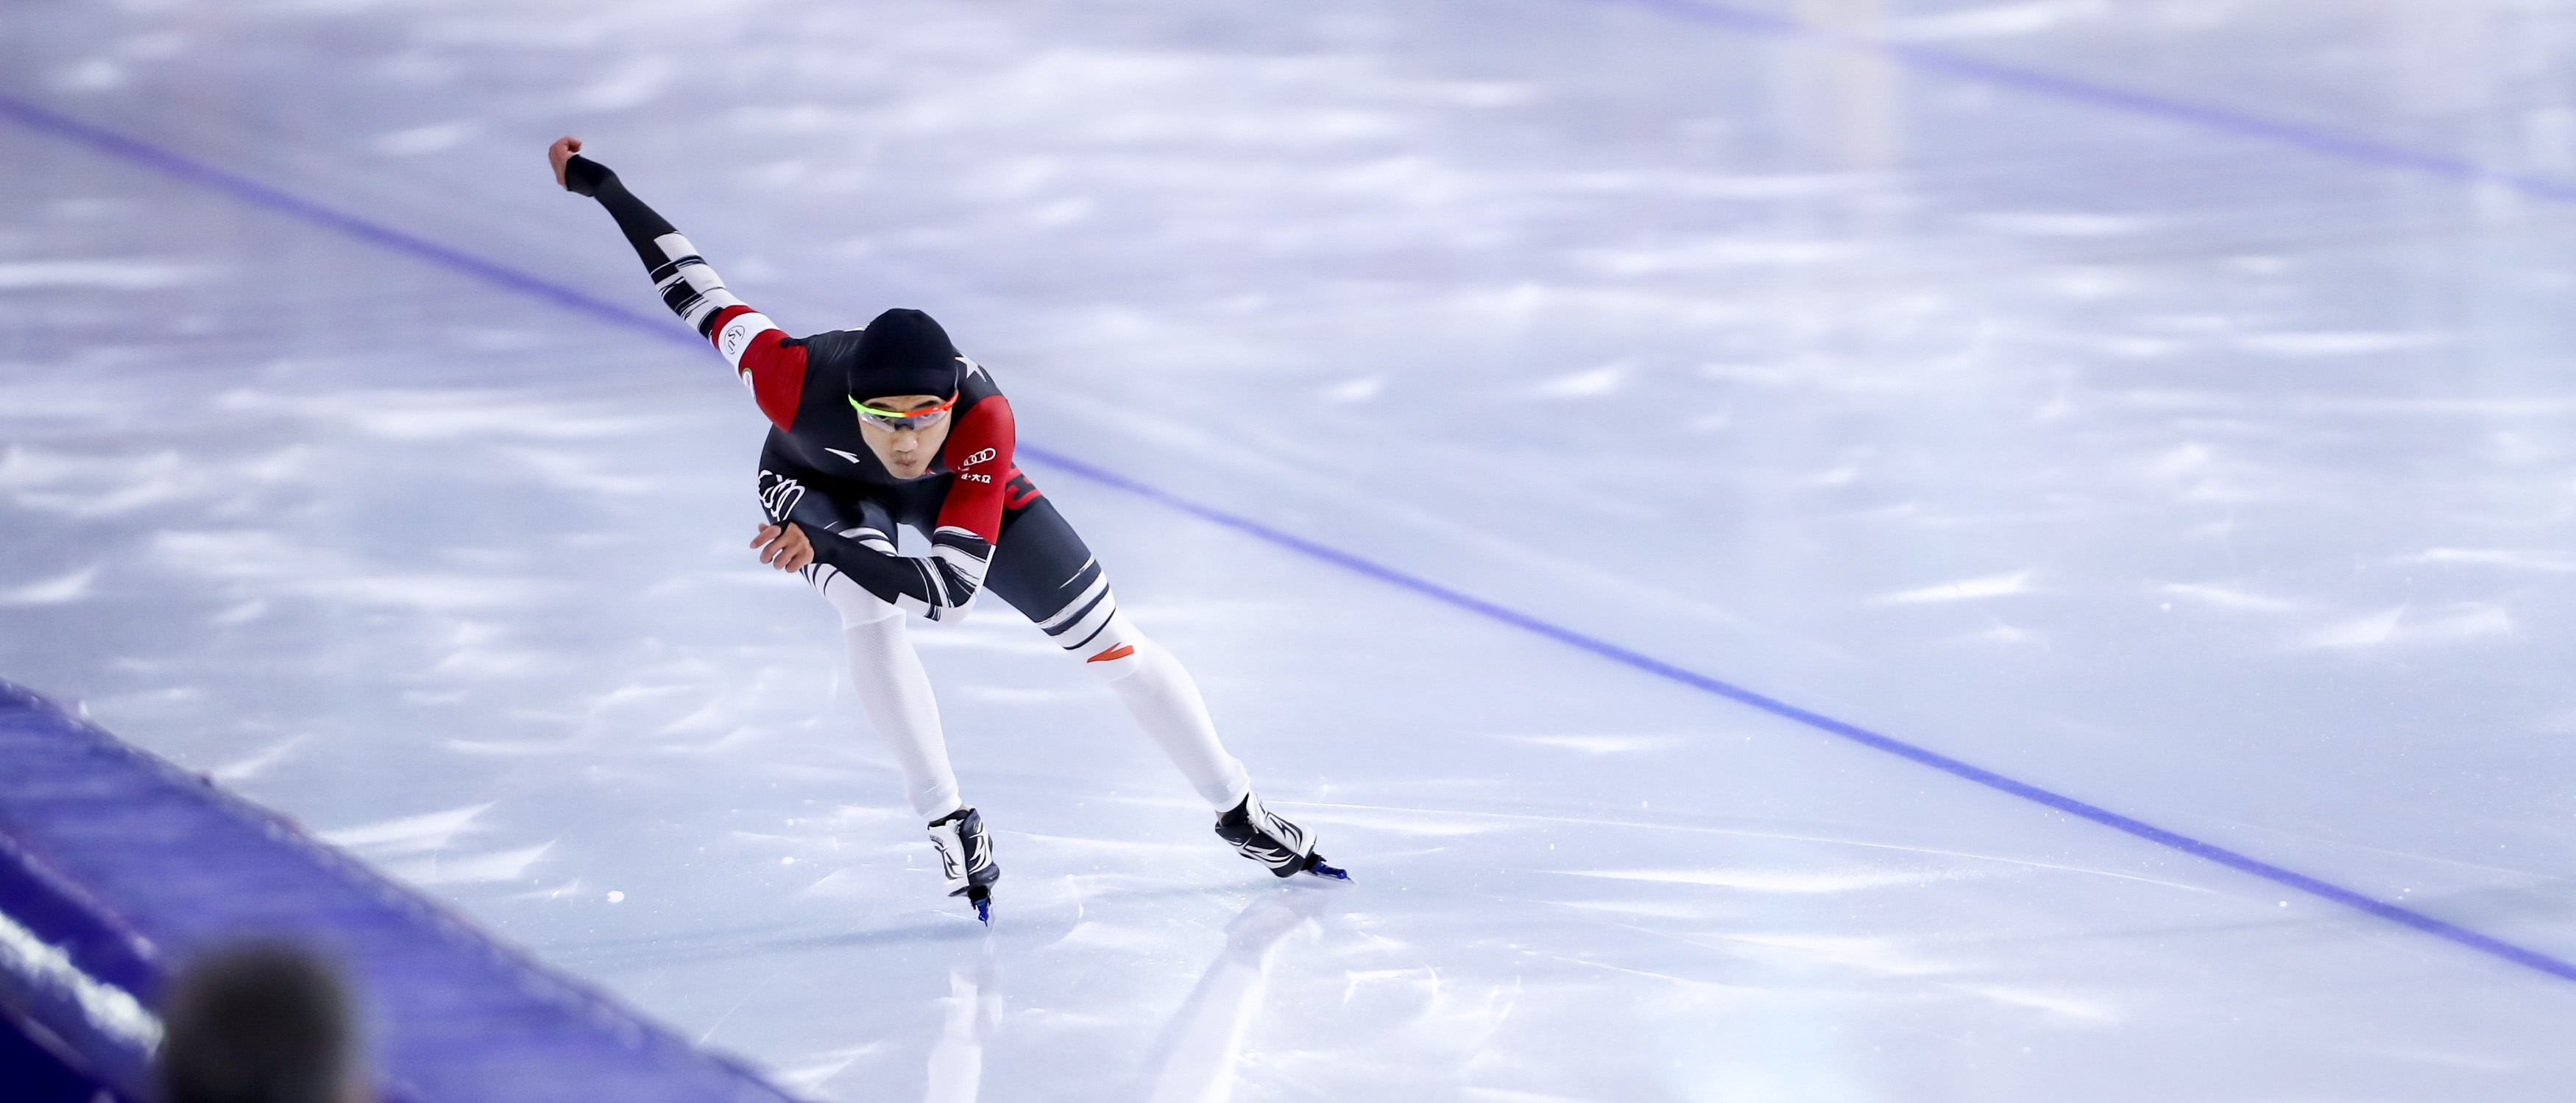 速度滑冰——世界杯总决赛:高亭宇获男子500米赛季第九名